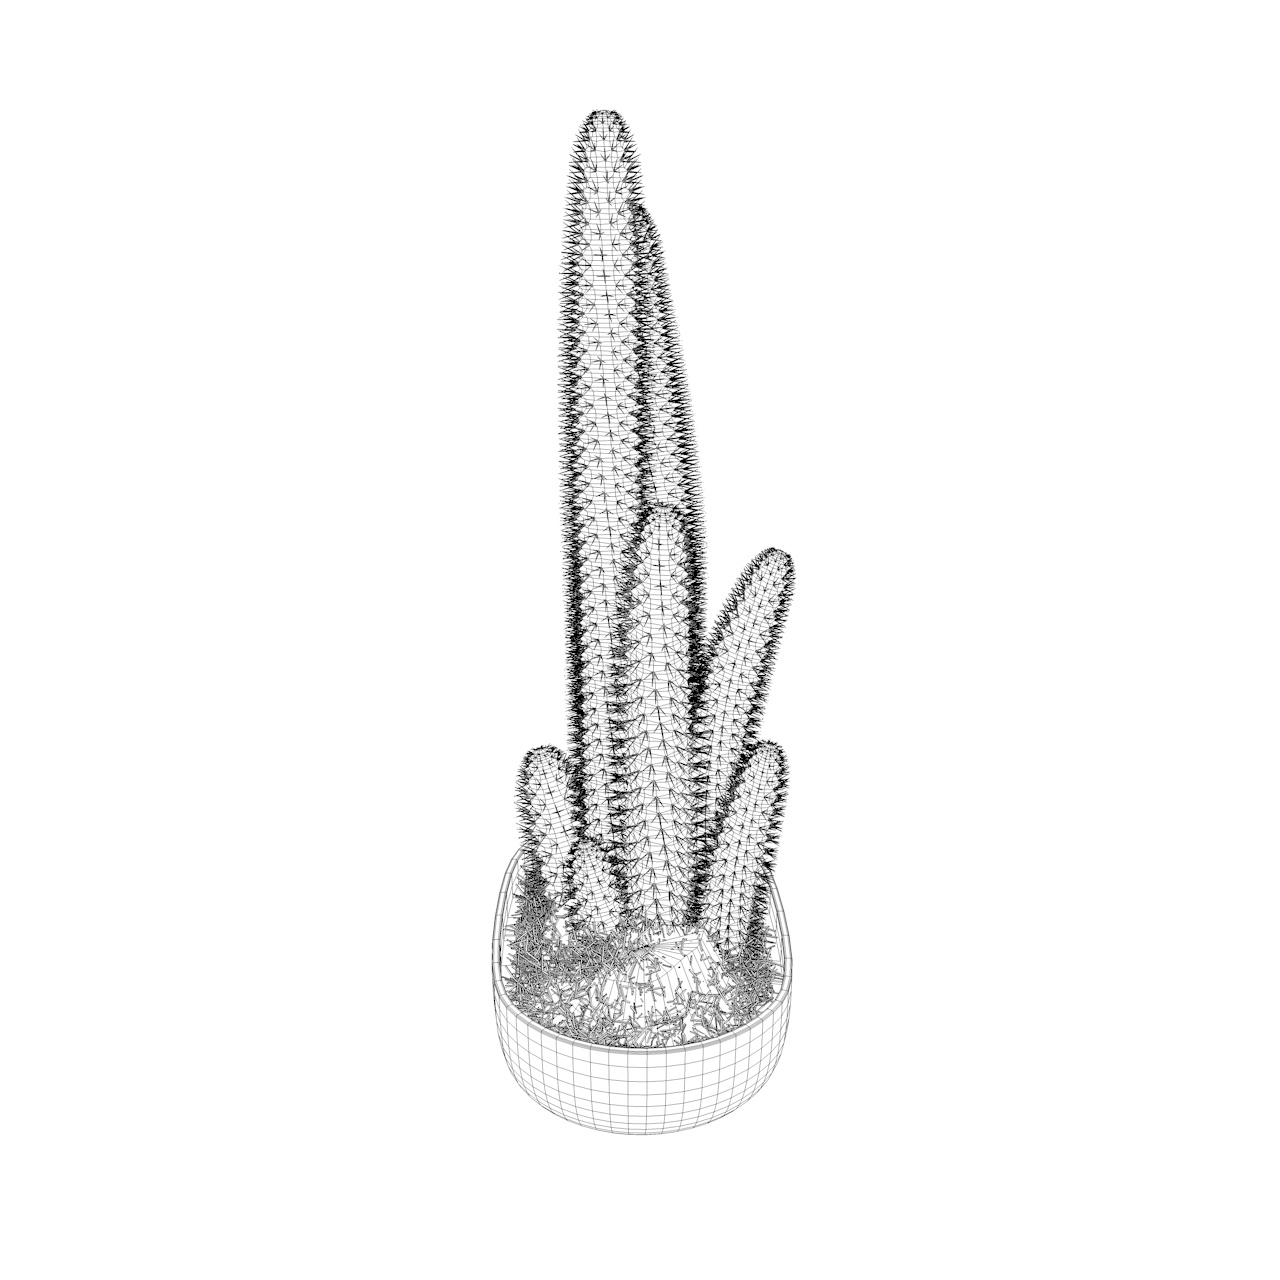 Kaktus 3D modell